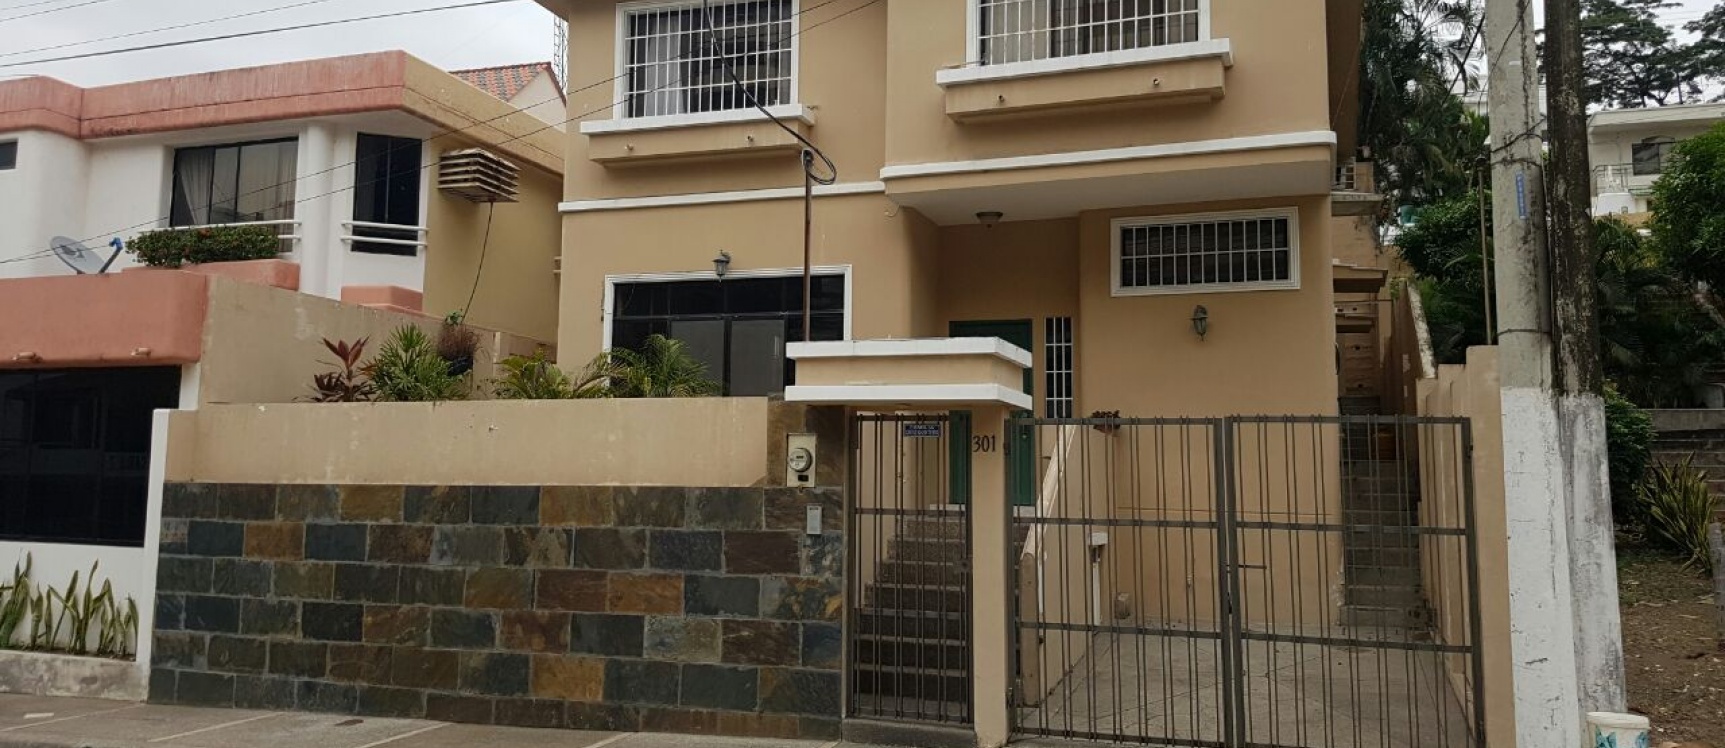 GeoBienes - Casa en venta CEIBOS NORTE Guayaquil - Plusvalia Guayaquil Casas de venta y alquiler Inmobiliaria Ecuador